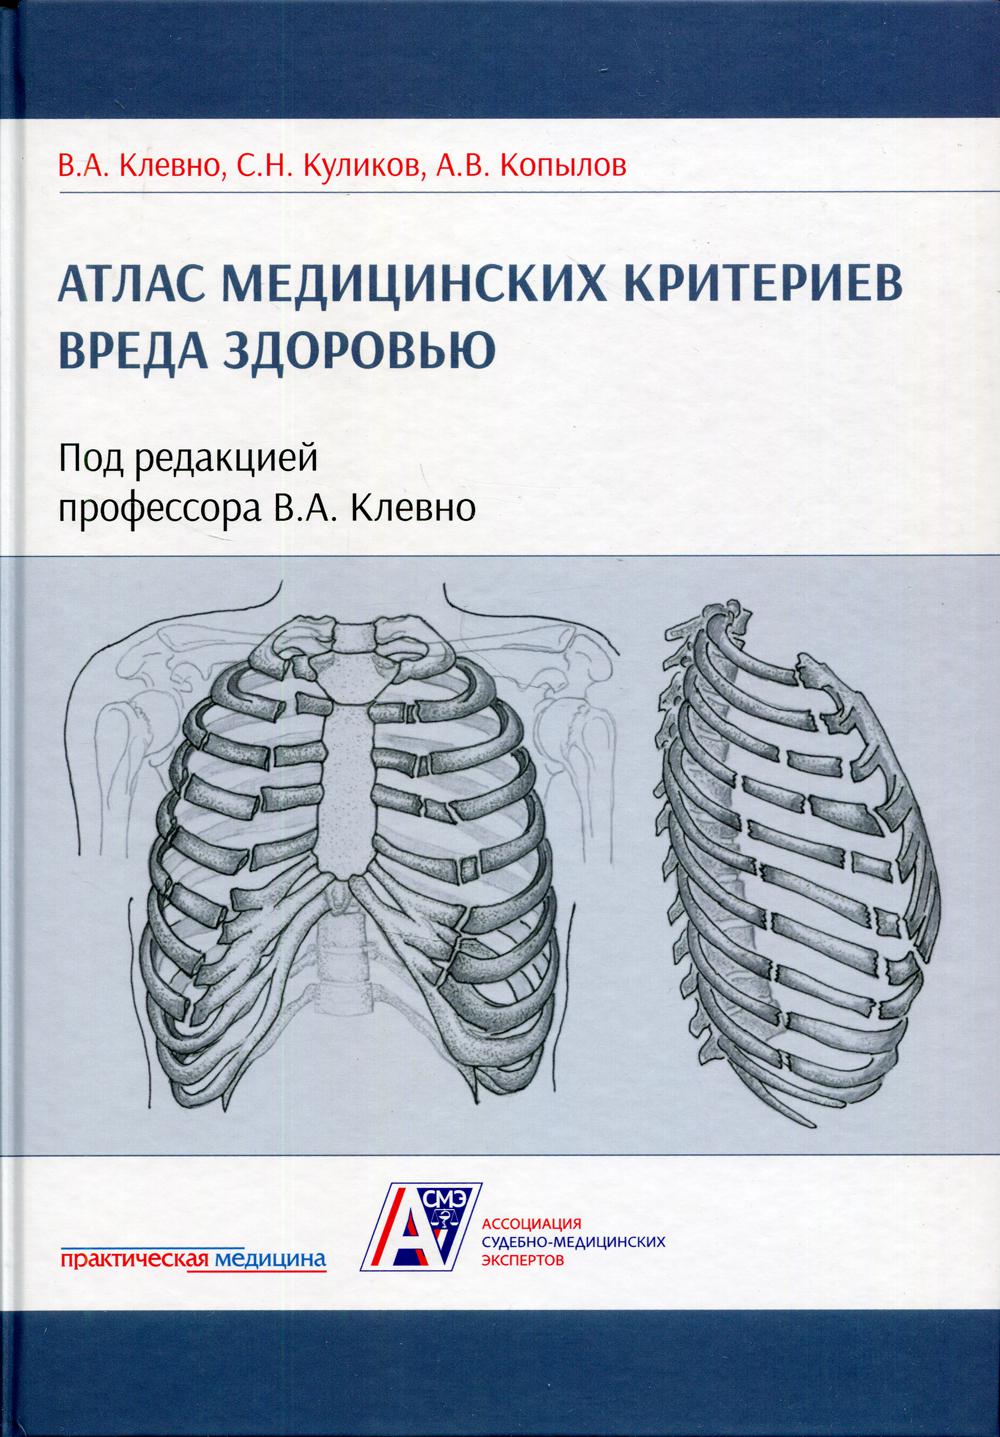 фото Книга атлас медицинских критериев вреда здоровью практическая медицина